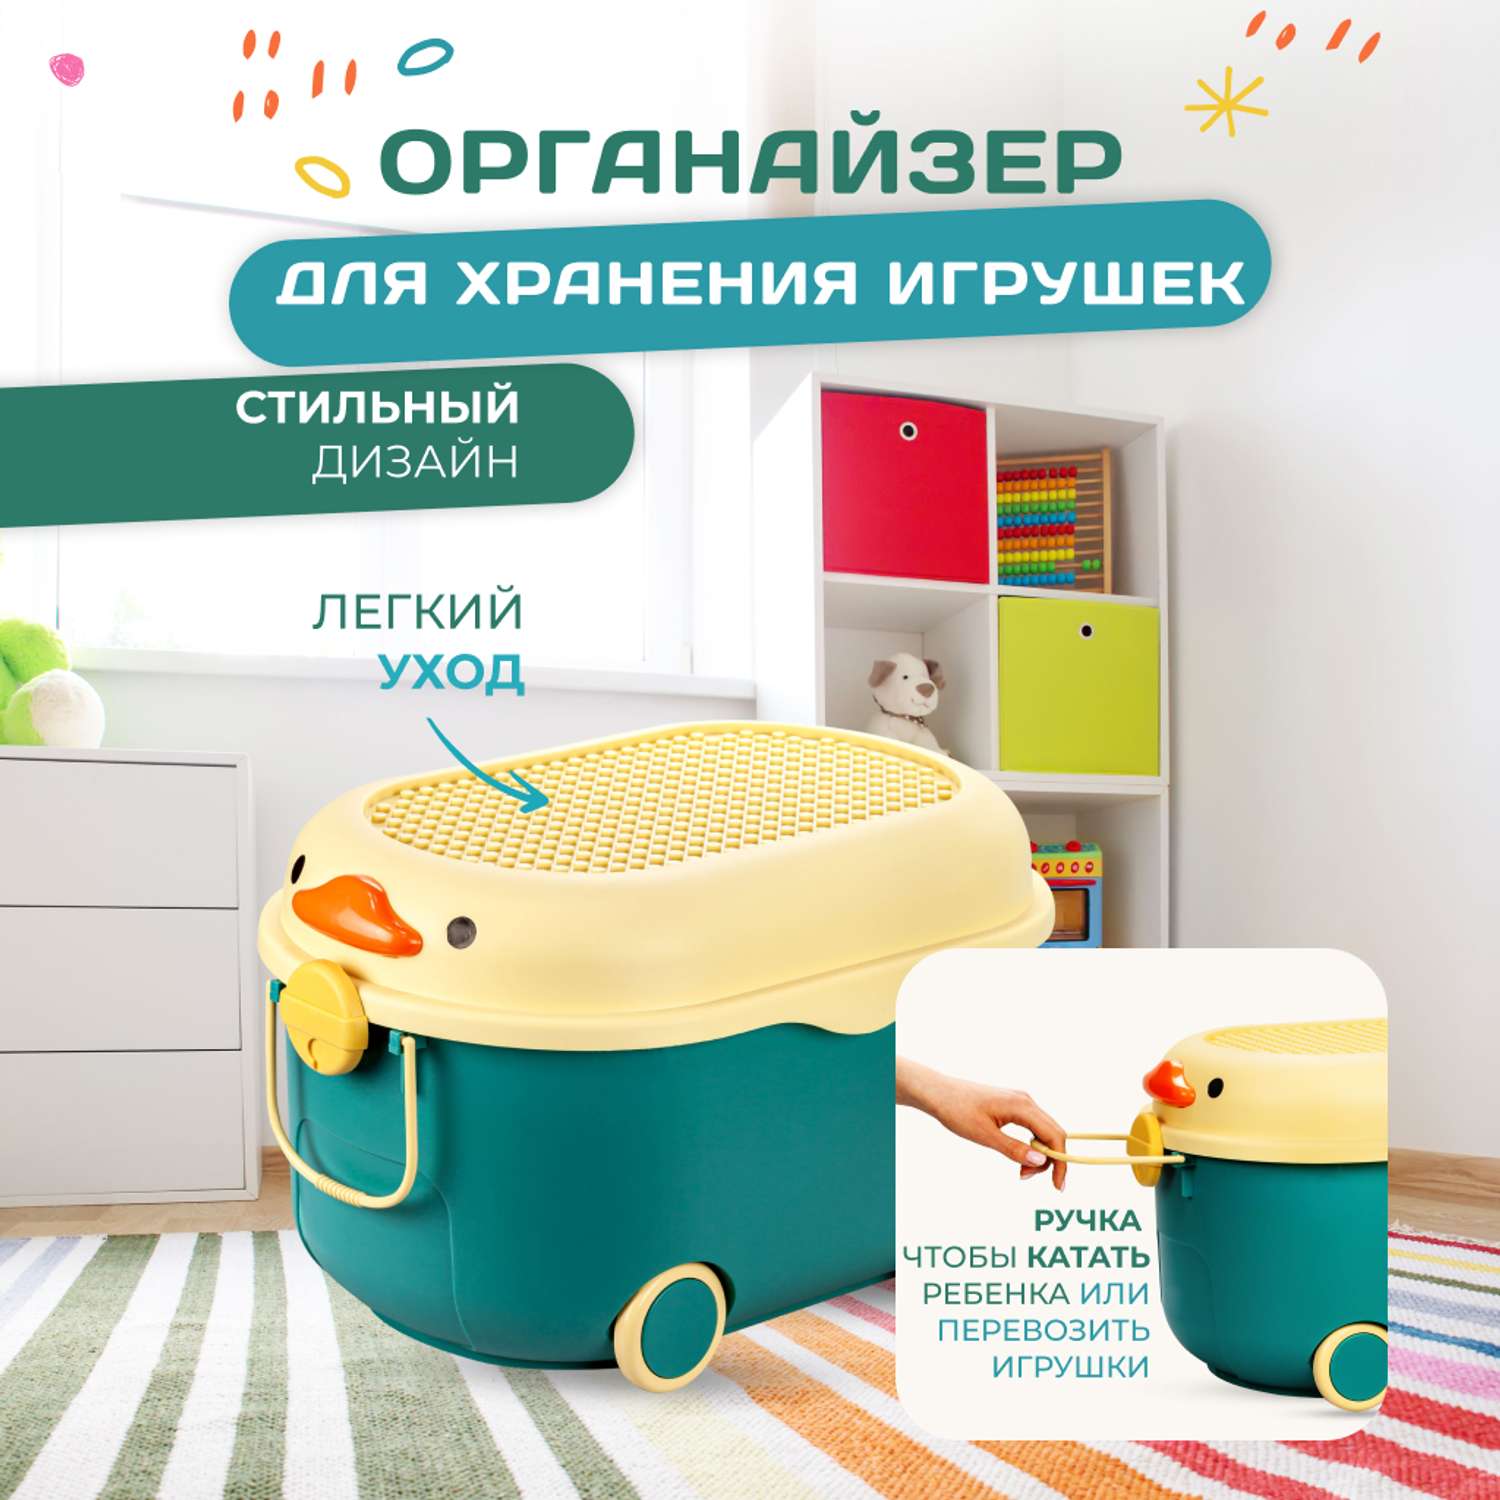 Органайзеры, корзины, ящики для игрушек купить в Минске в интернет-магазине, цены